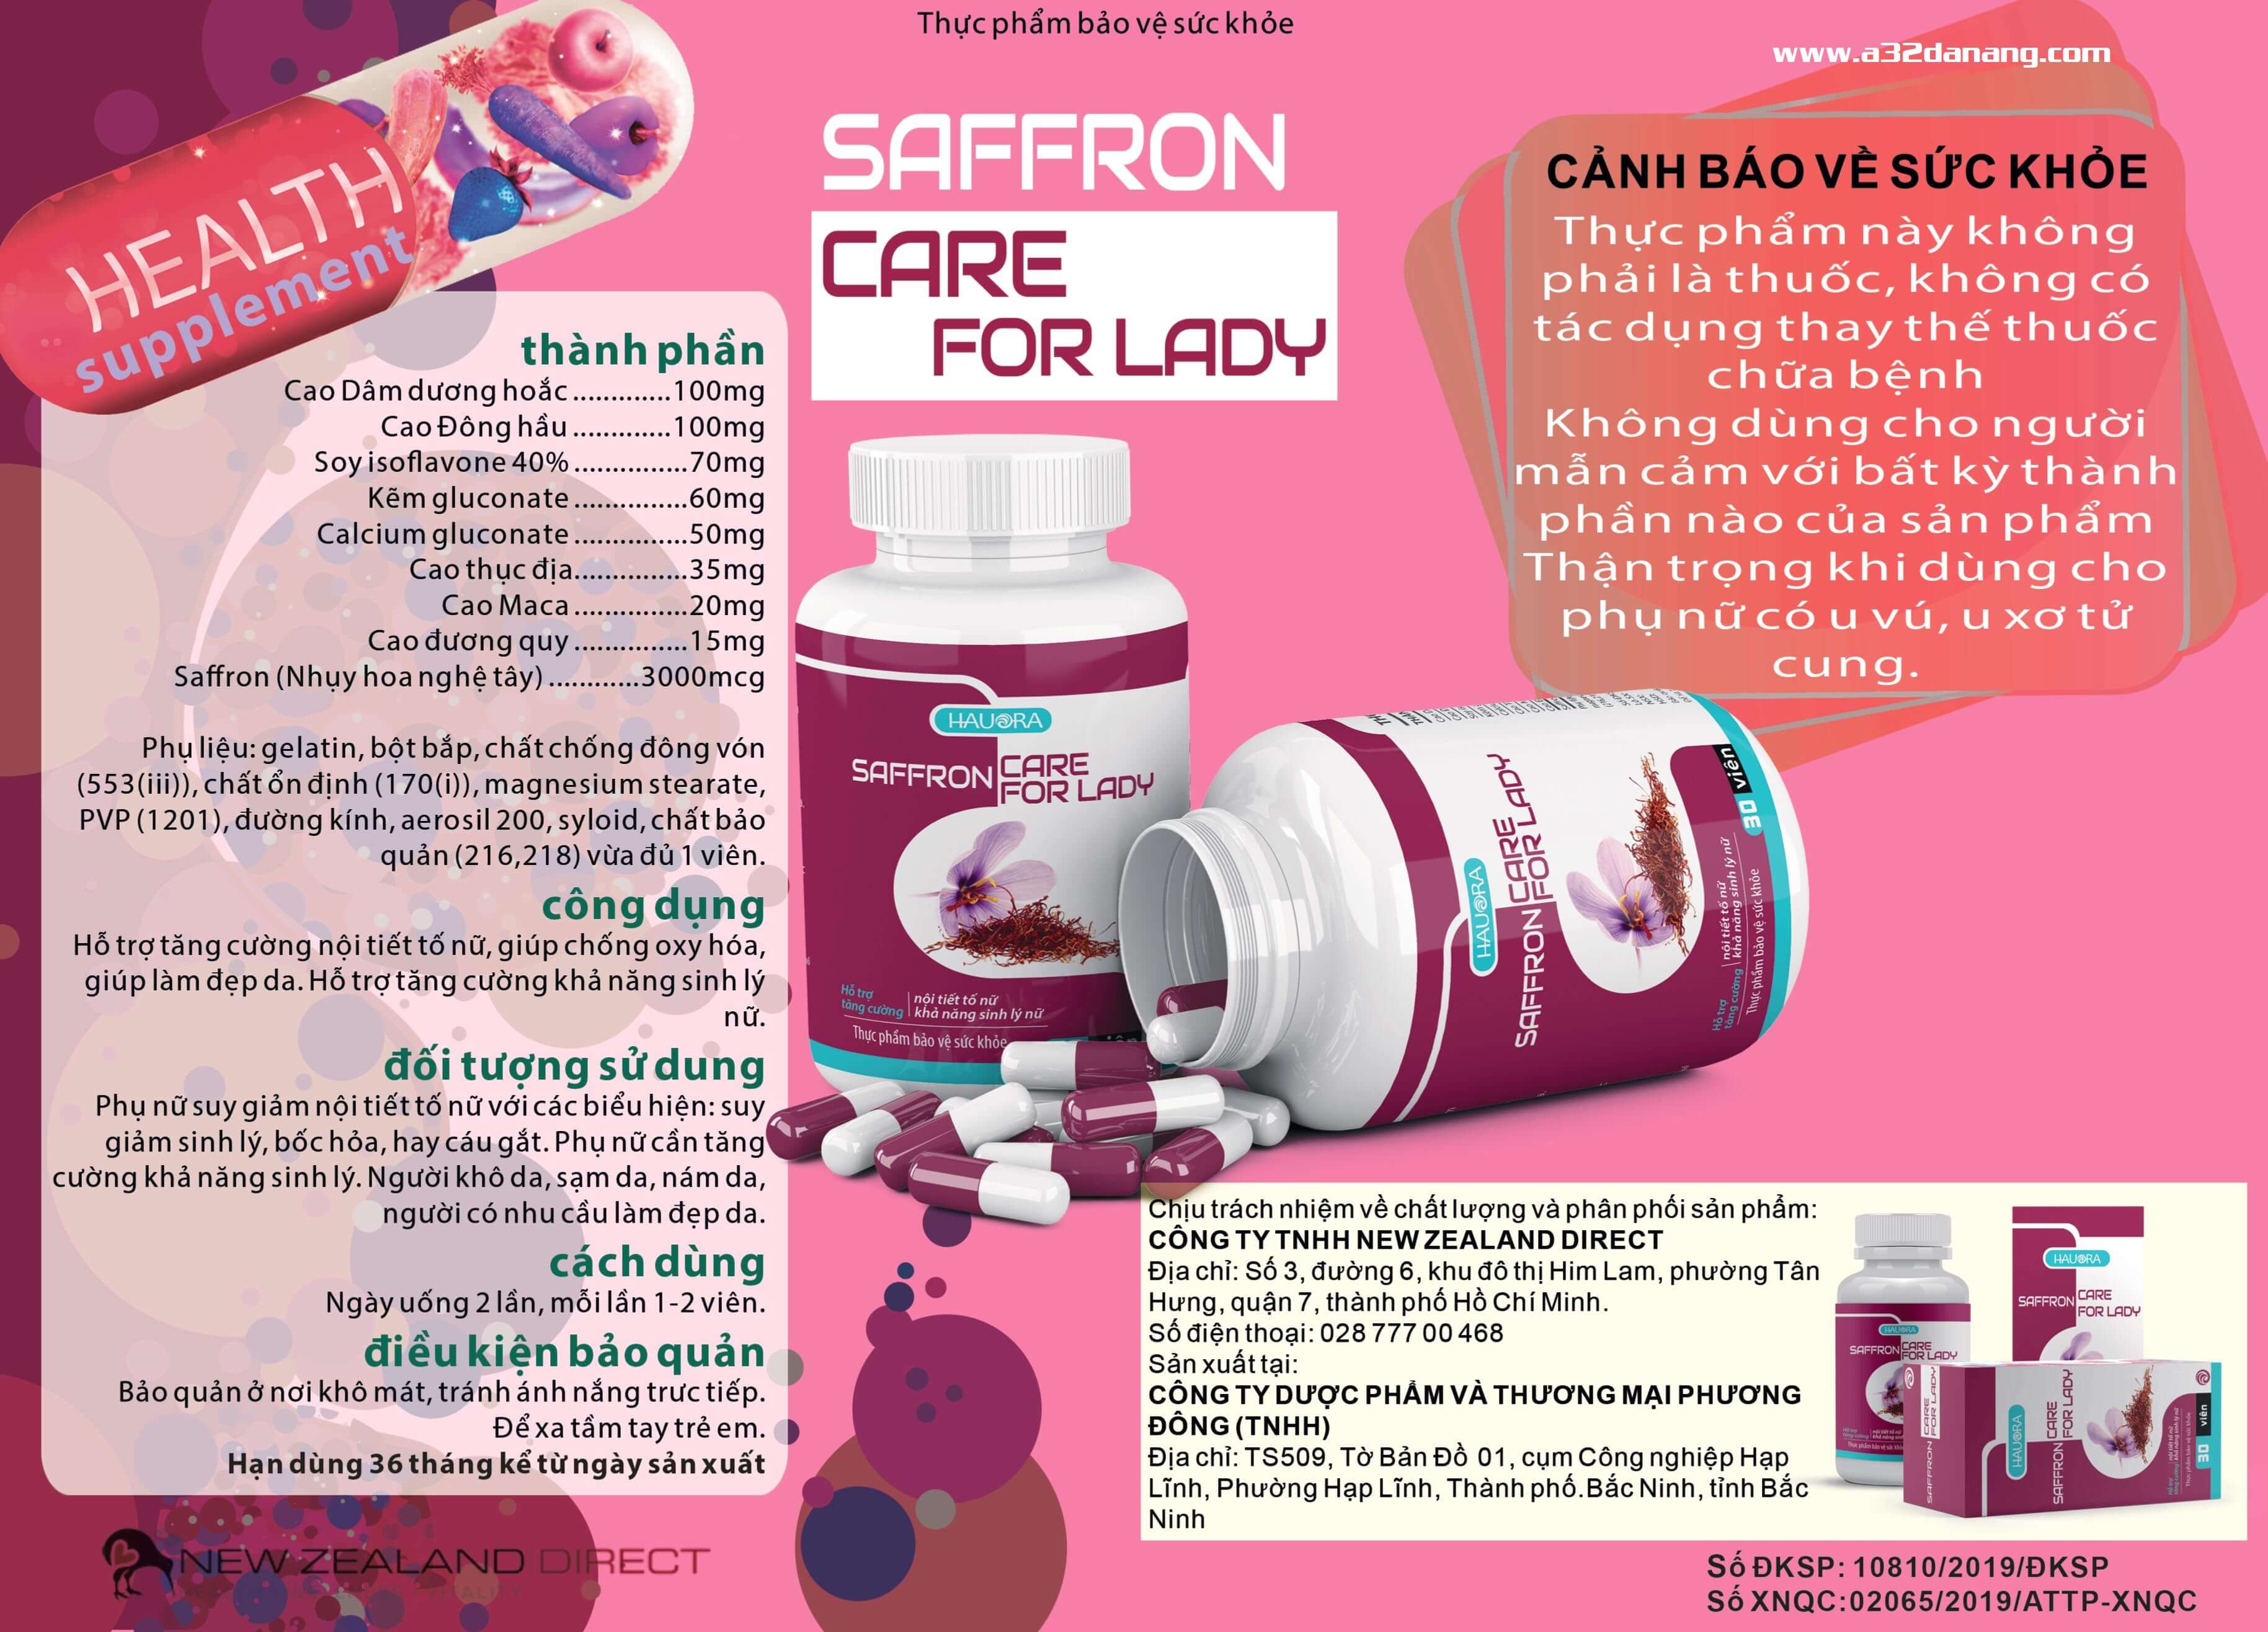 Saffaron Care